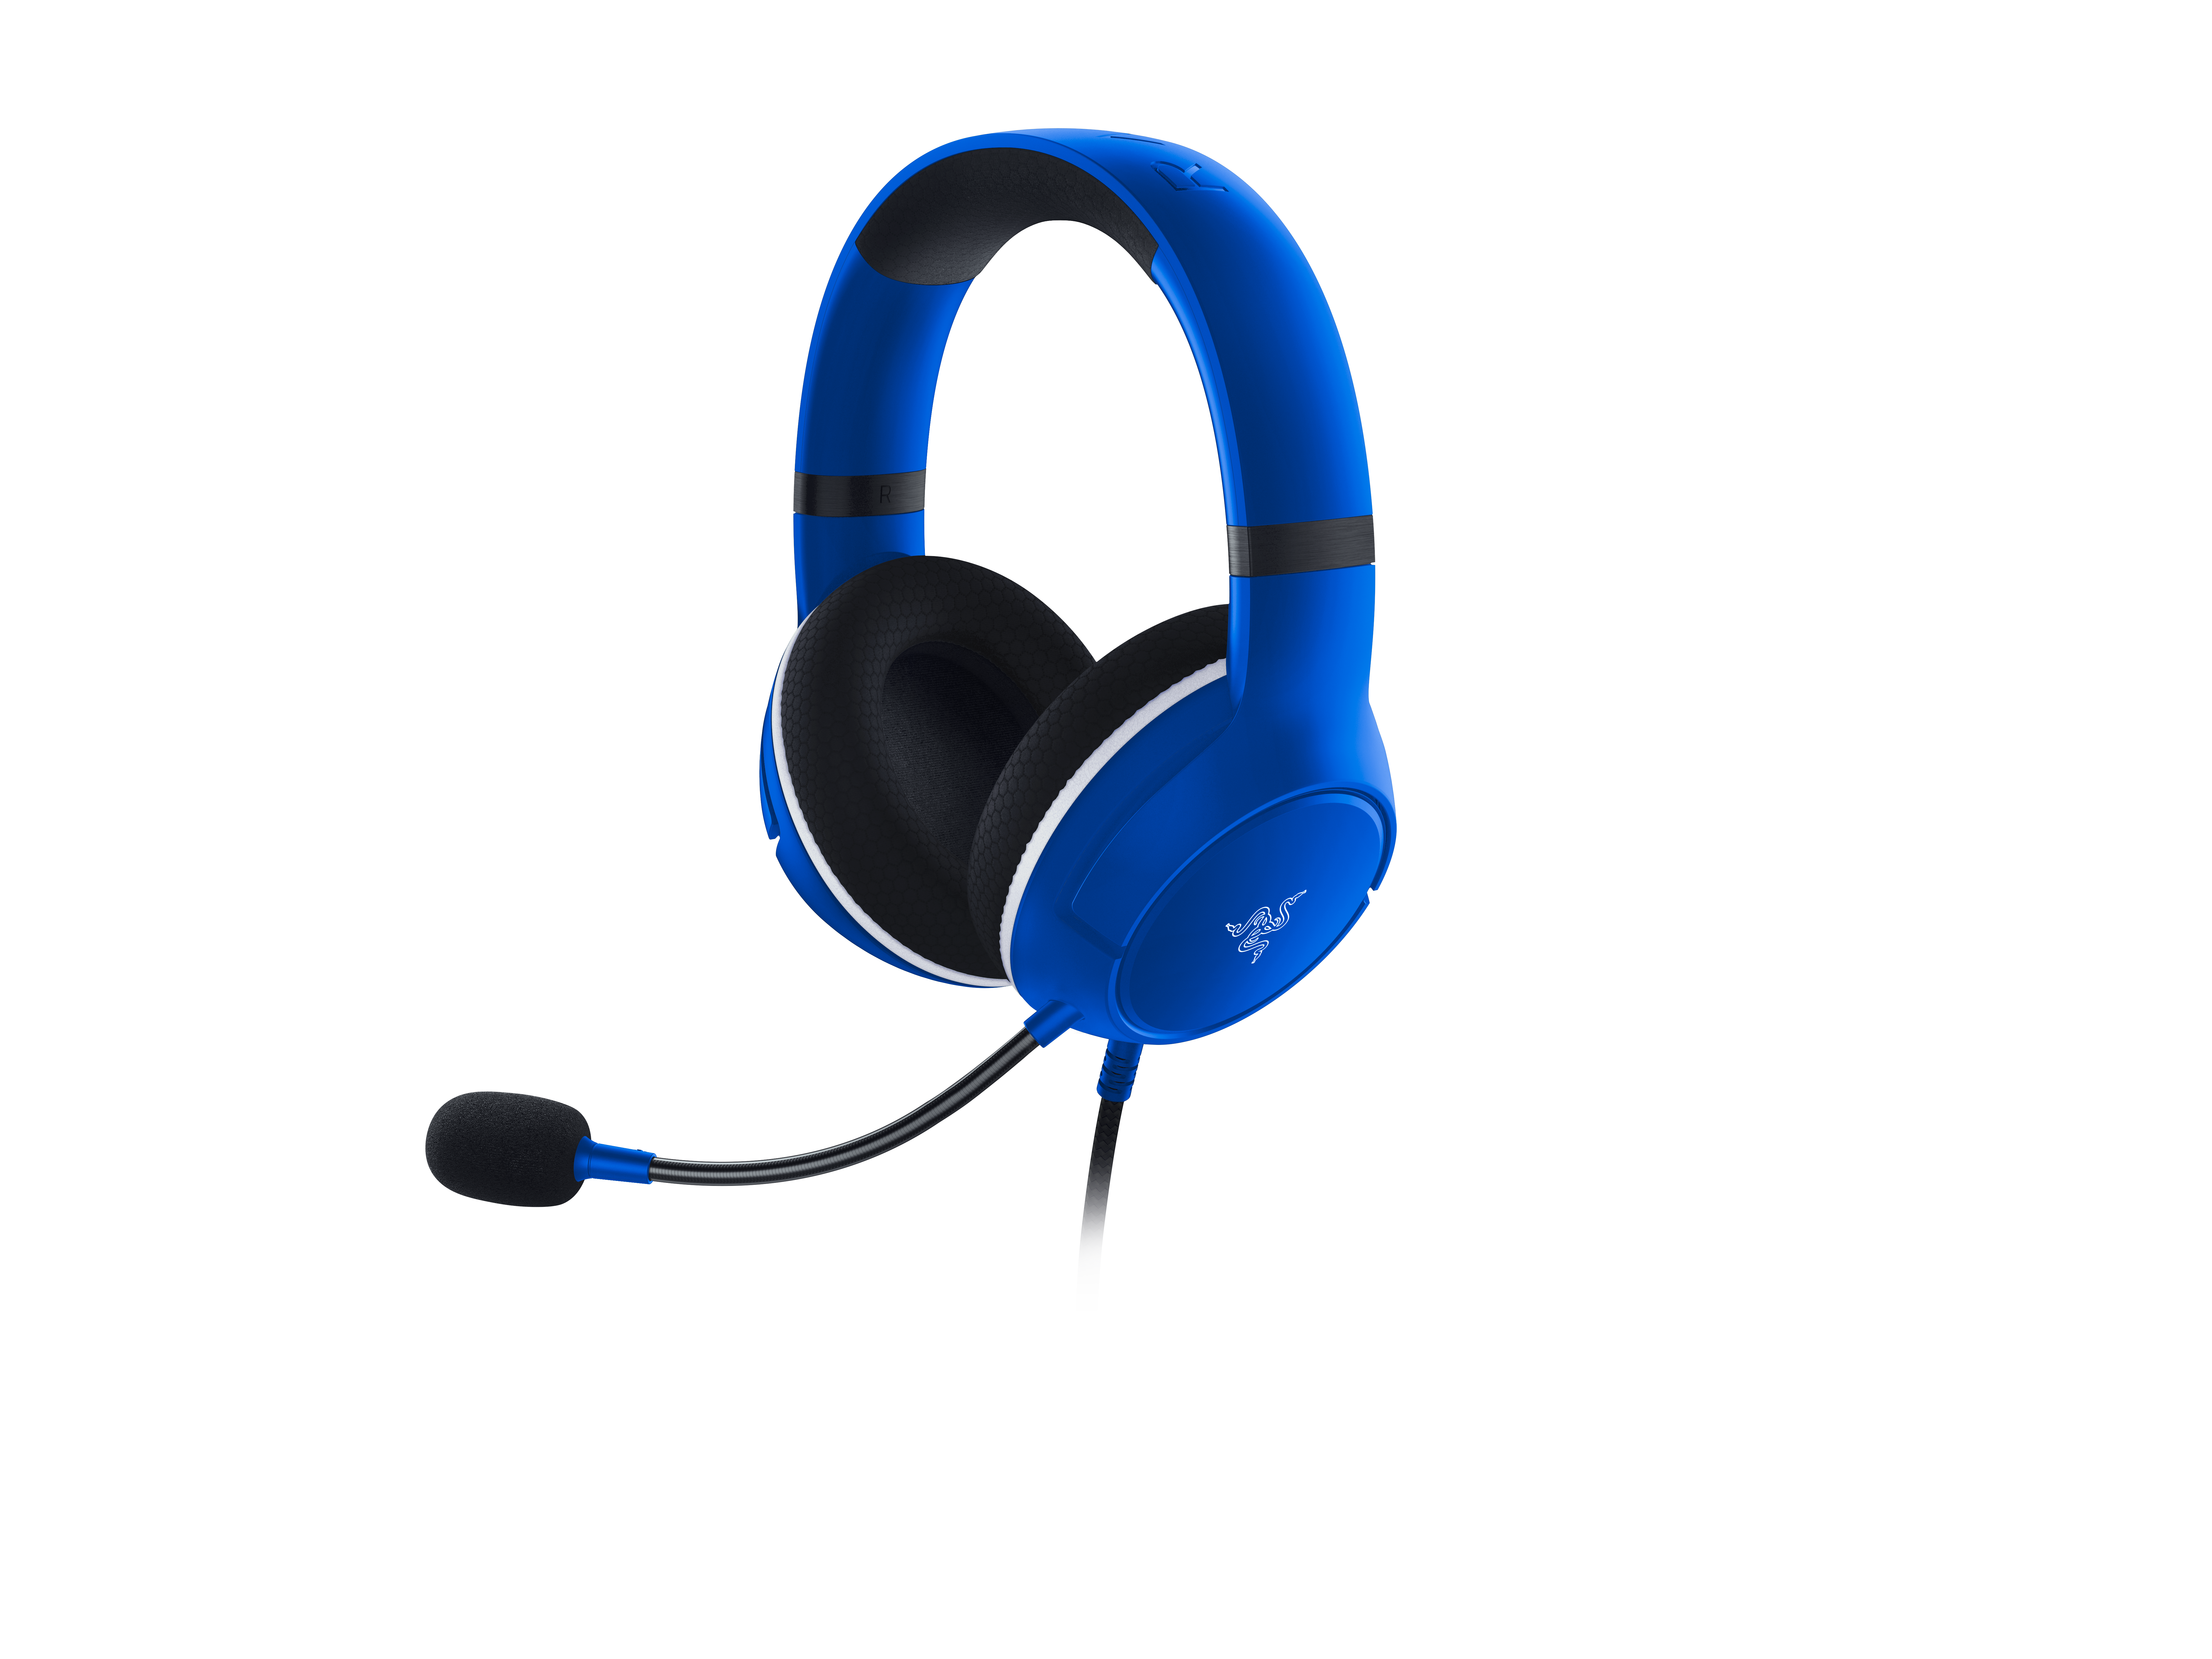 RAZER Essential Duo für Headset Bundle Gaming Over-ear Blau Xbox, Bundle